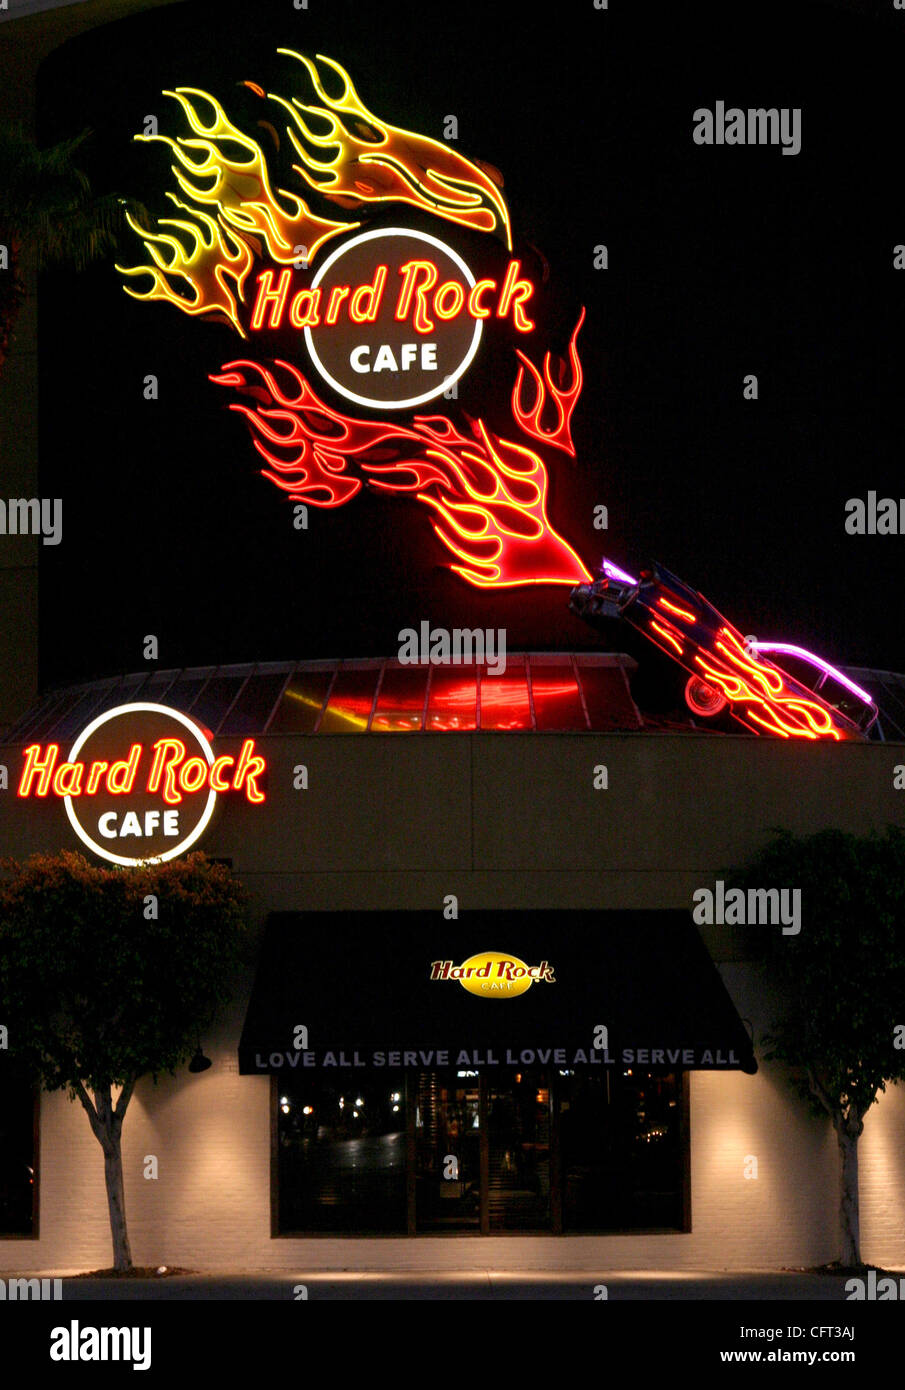 7. Dezember 2006; Beverly Hills, CA, USA; Sitz in der Florida Seminole indianischen Stamm hat die Musik-Themen Hard Rock Cafe Kette für fast $ 1 Milliarde, in eine Bewegung, die wachsenden Reichtum und macht von nativen Völker des Landes unterstreicht gekauft "Dies ist ein stolzer Moment für die Seminole-Stamm von Flo Stockfoto